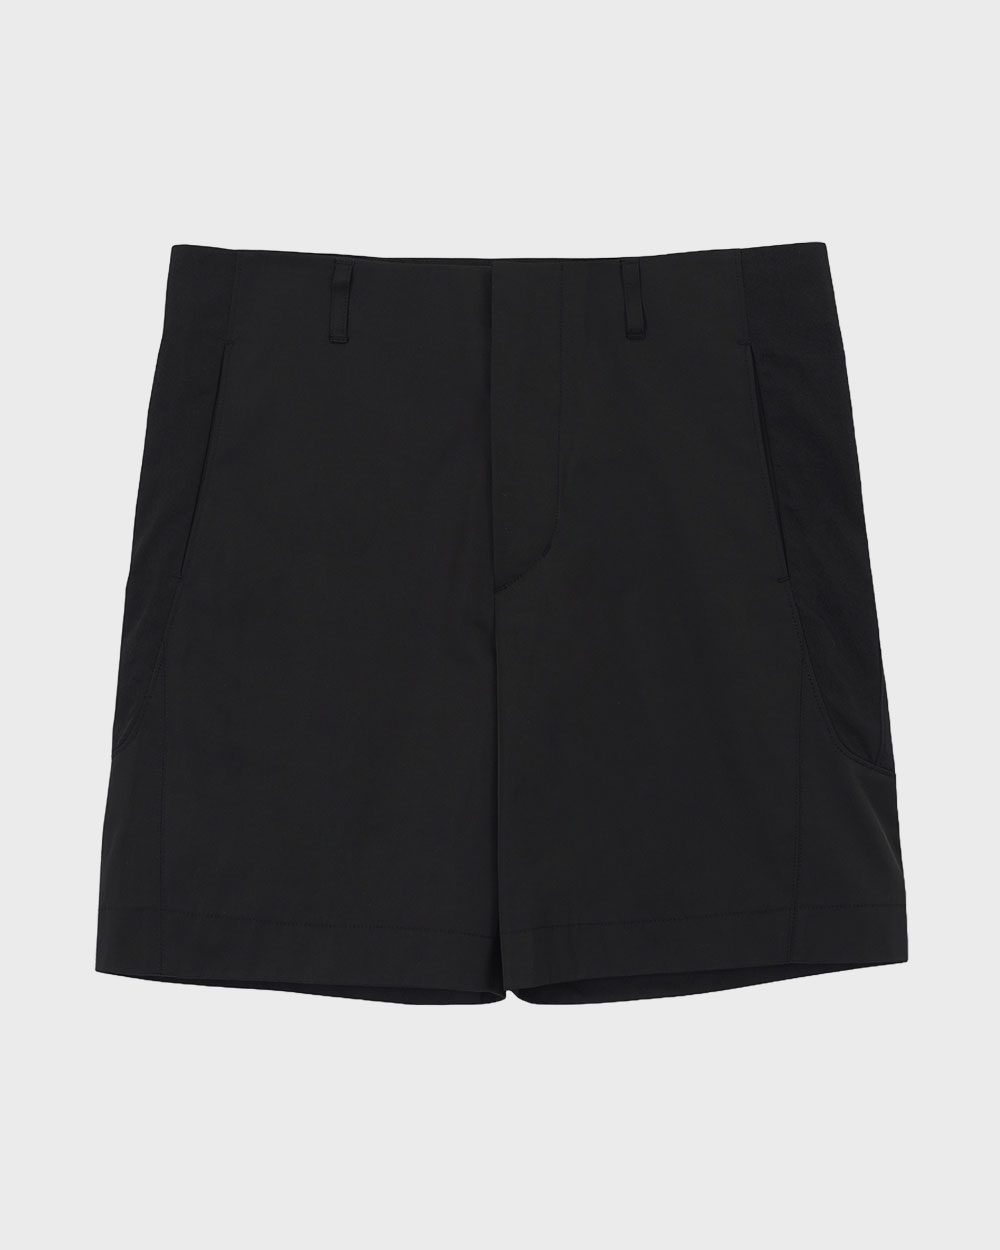 Nylon Combination Shorts (Black)